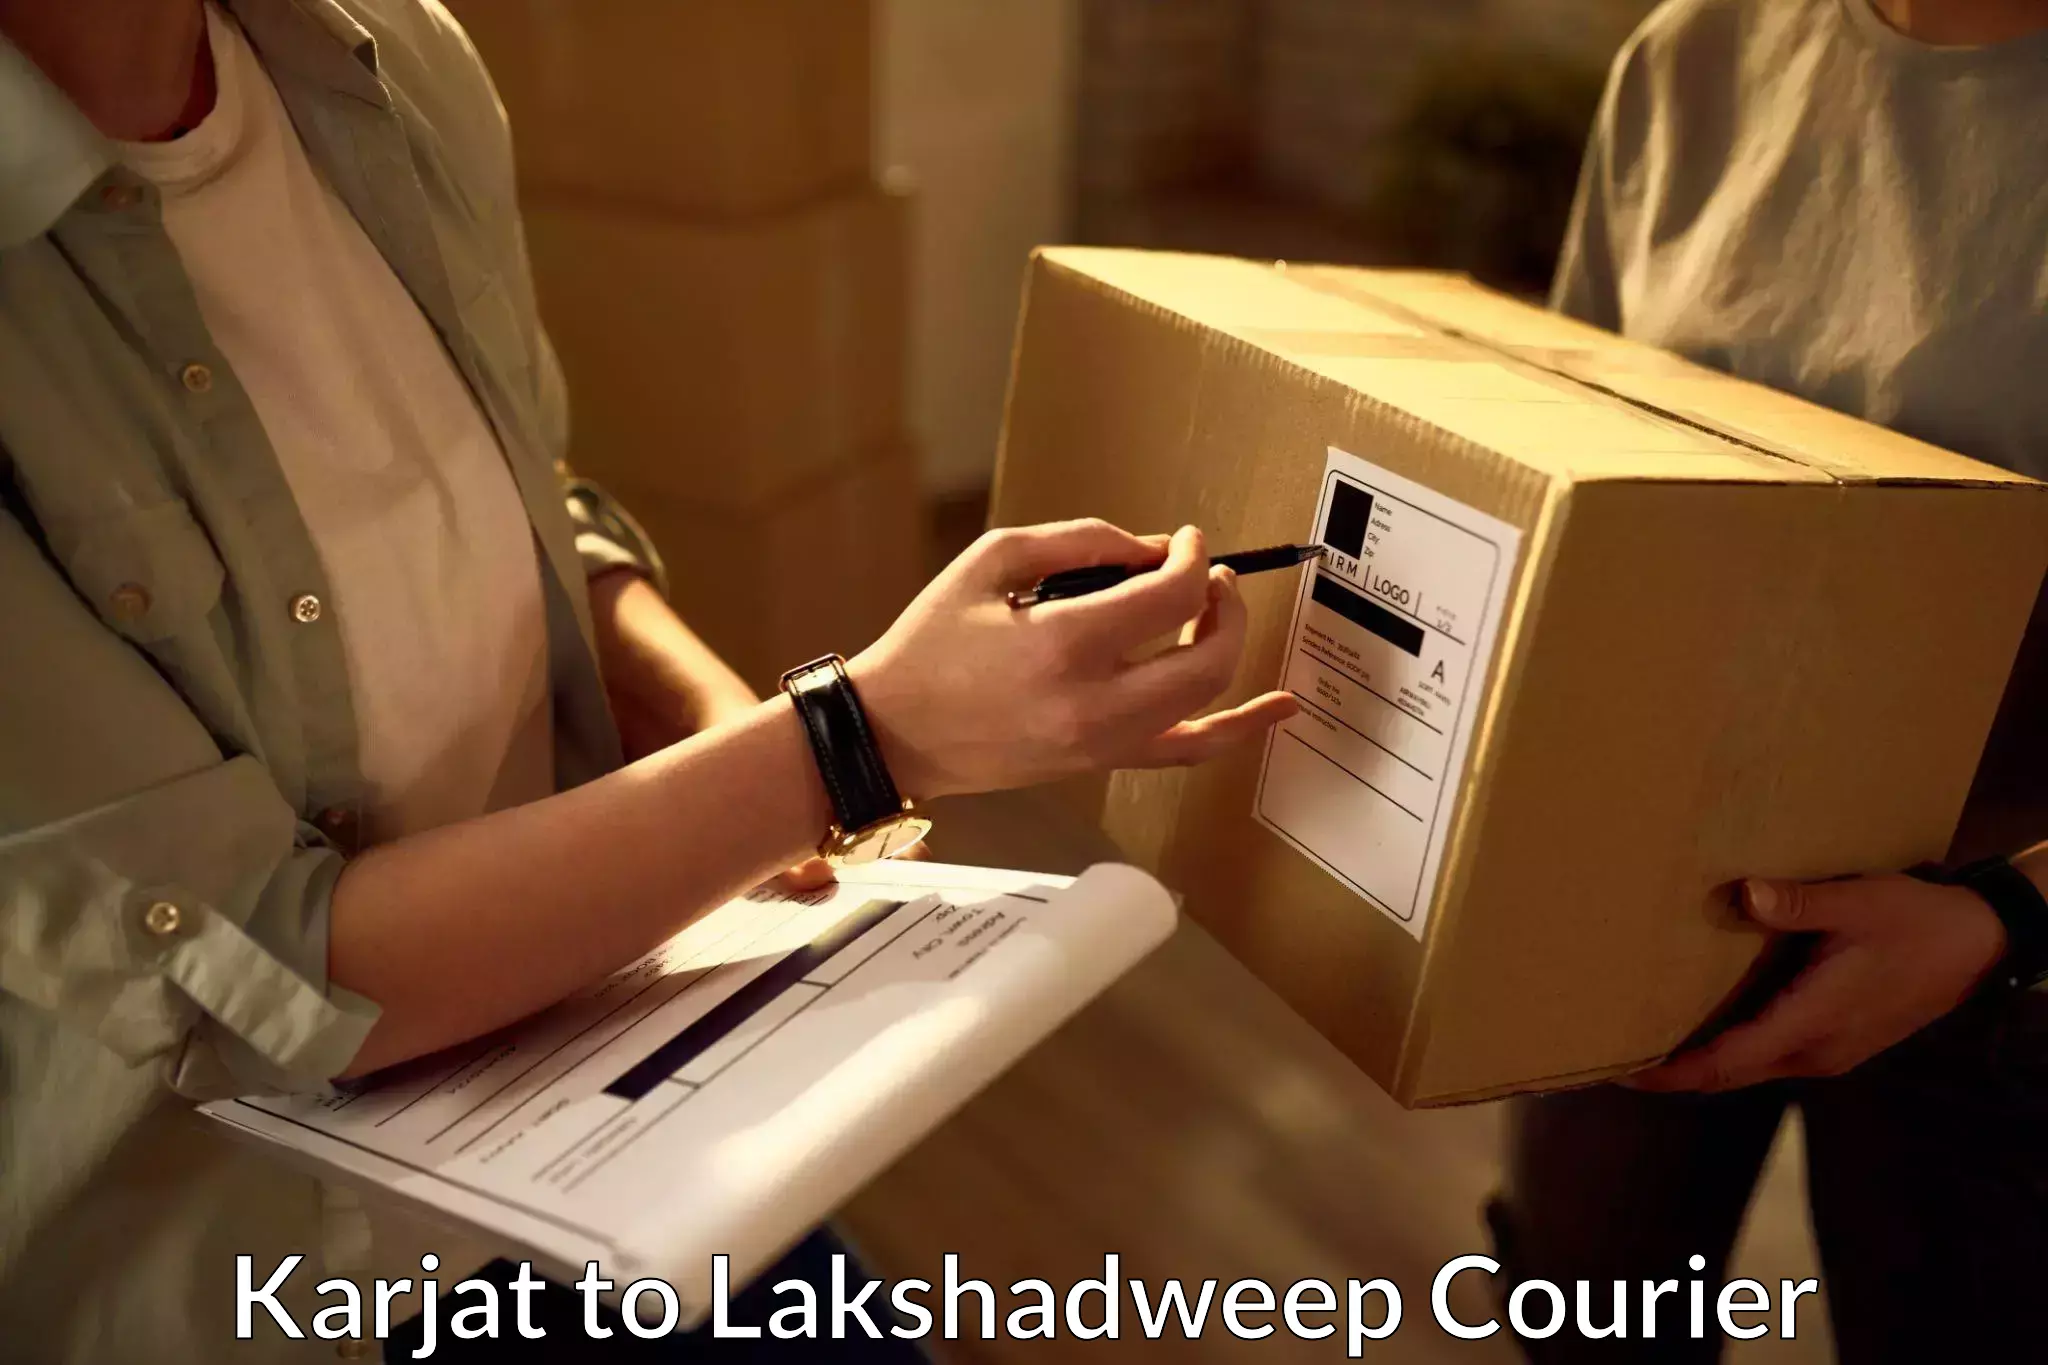 Personal parcel delivery Karjat to Lakshadweep